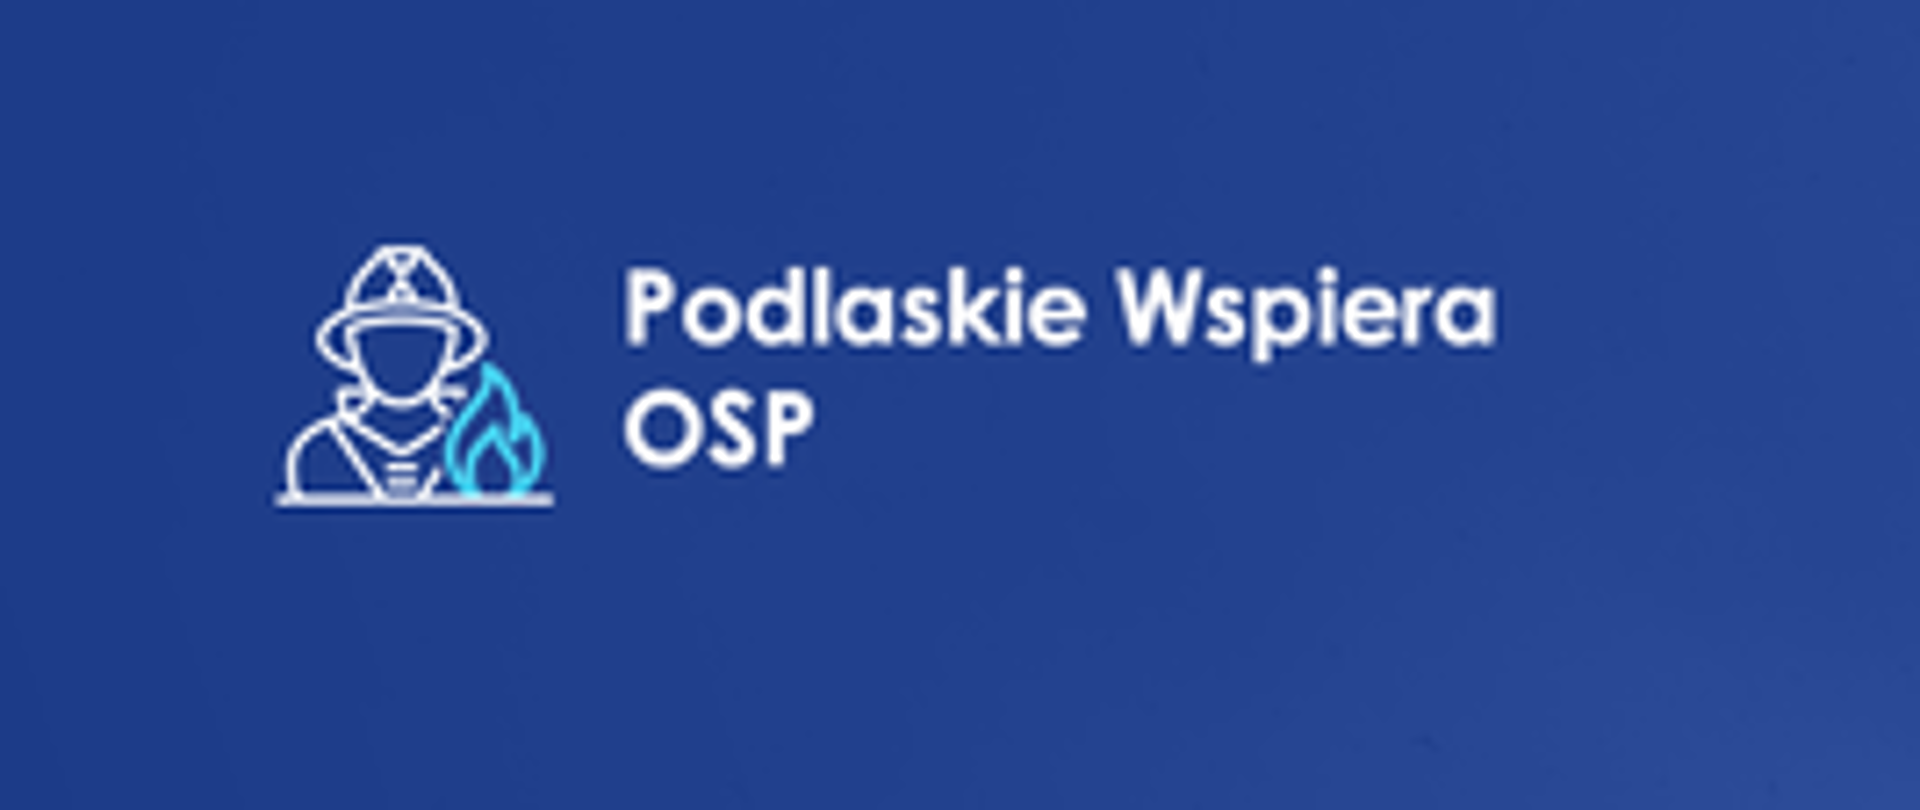 Podlaskie wspiera OSP